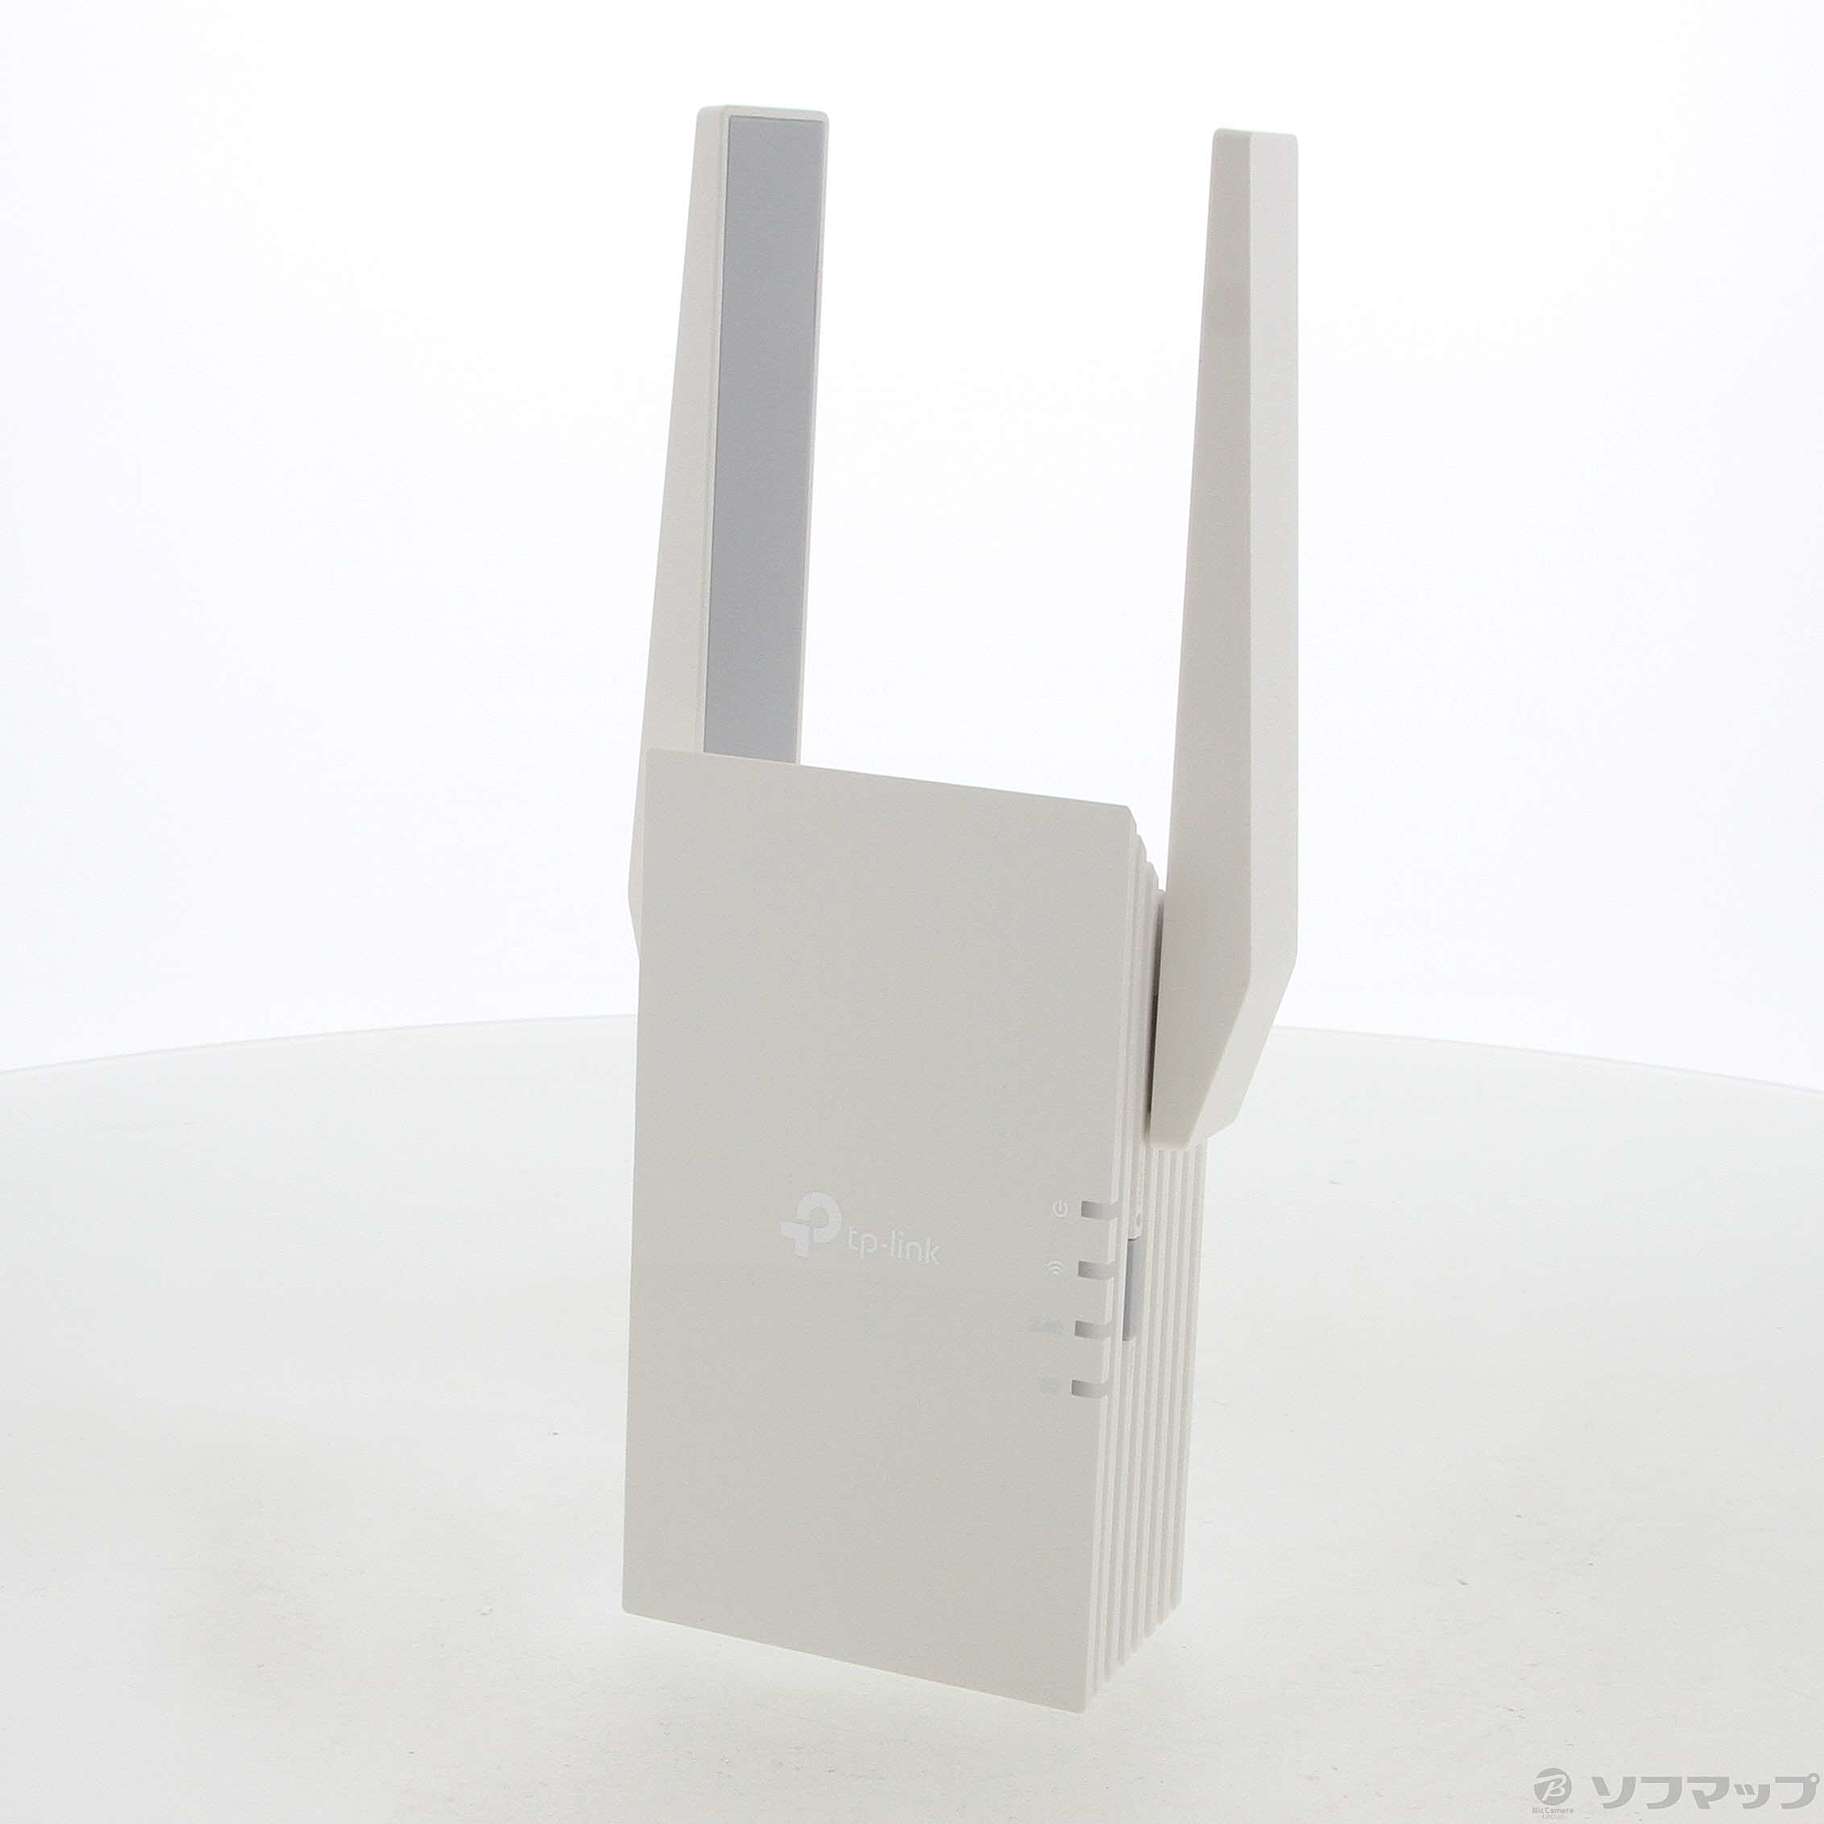 RE605X | AX1800 Wi-Fi 6中継機